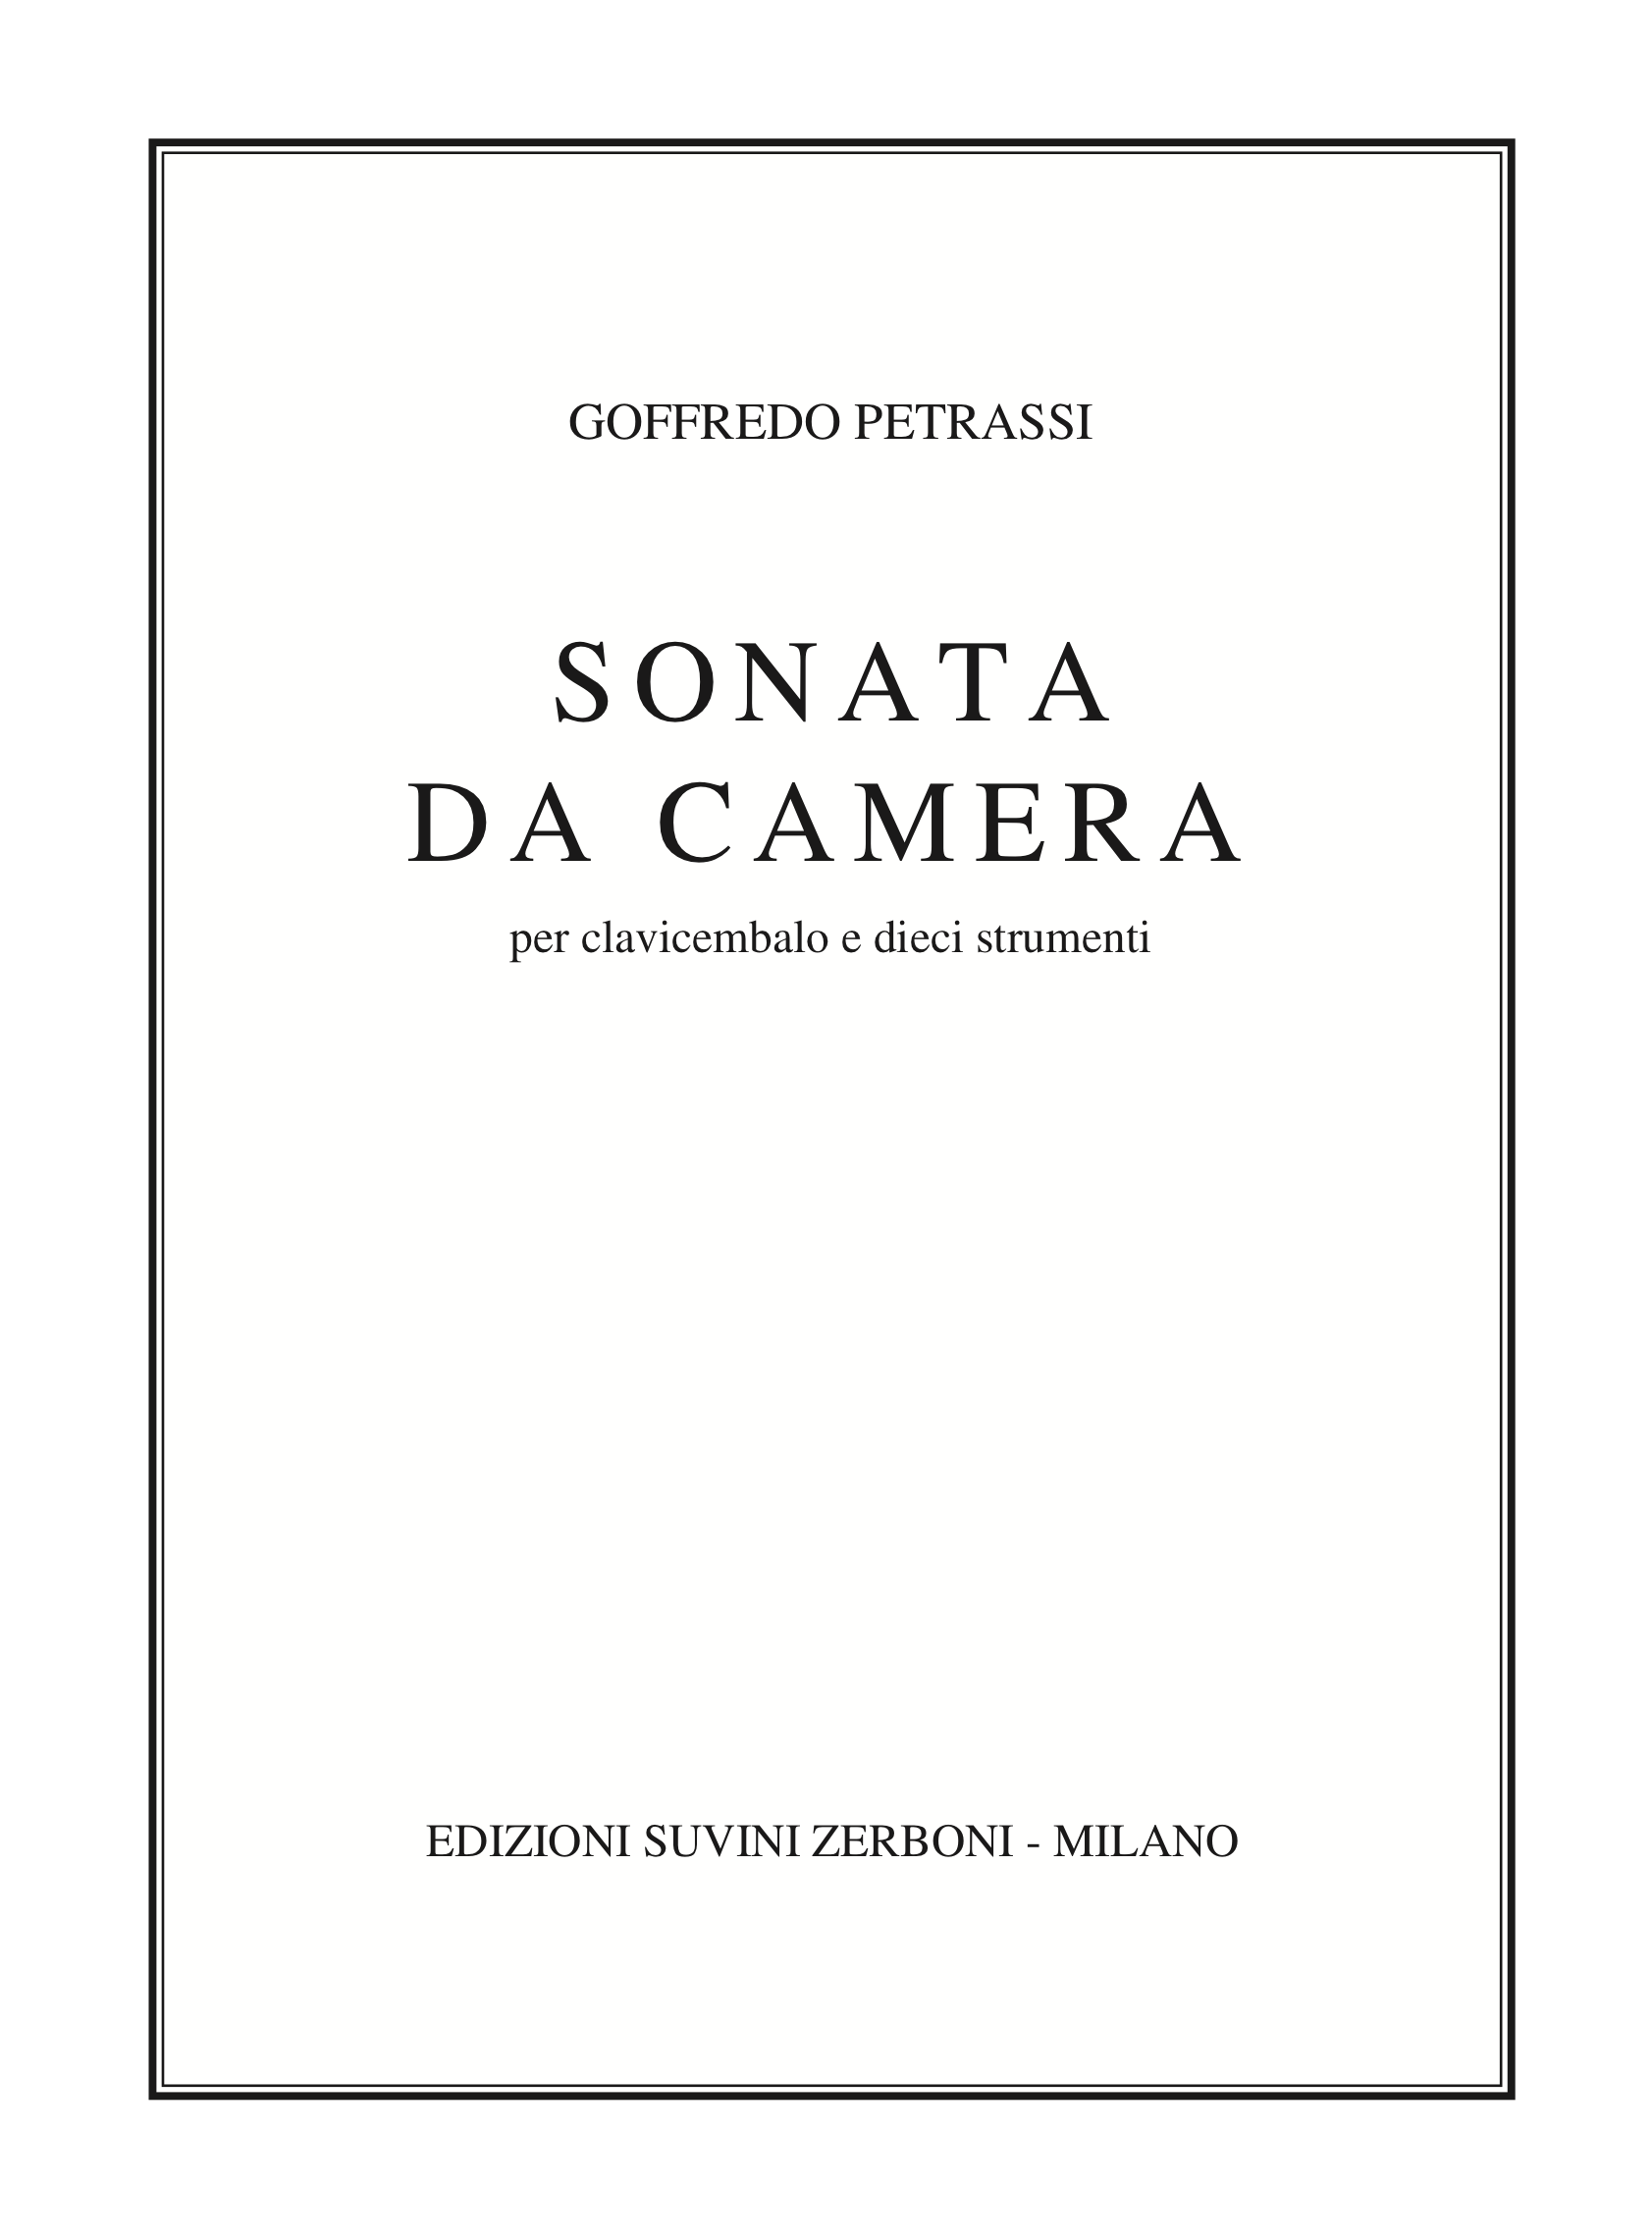 Sonata da camera_per clavicembalo e dieci strumenti_Petrassi 1